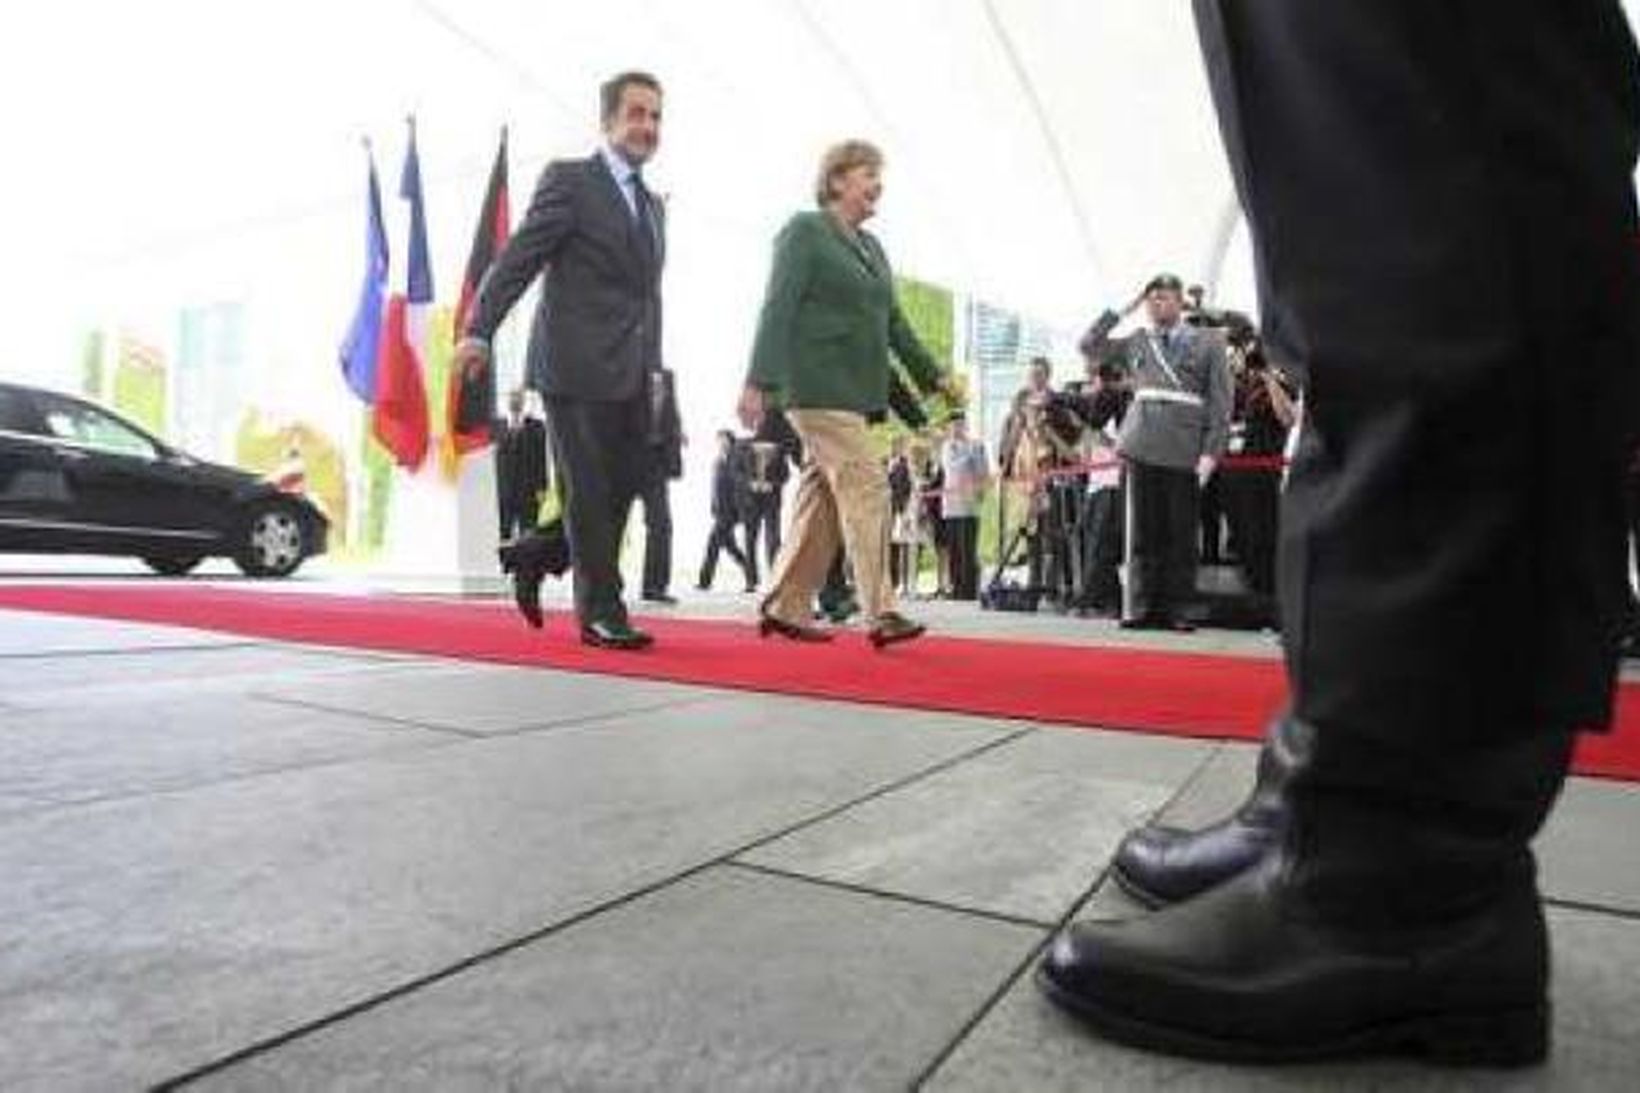 Angela Merkel tók á móti Nicolas Sarkozy í Berlín í …